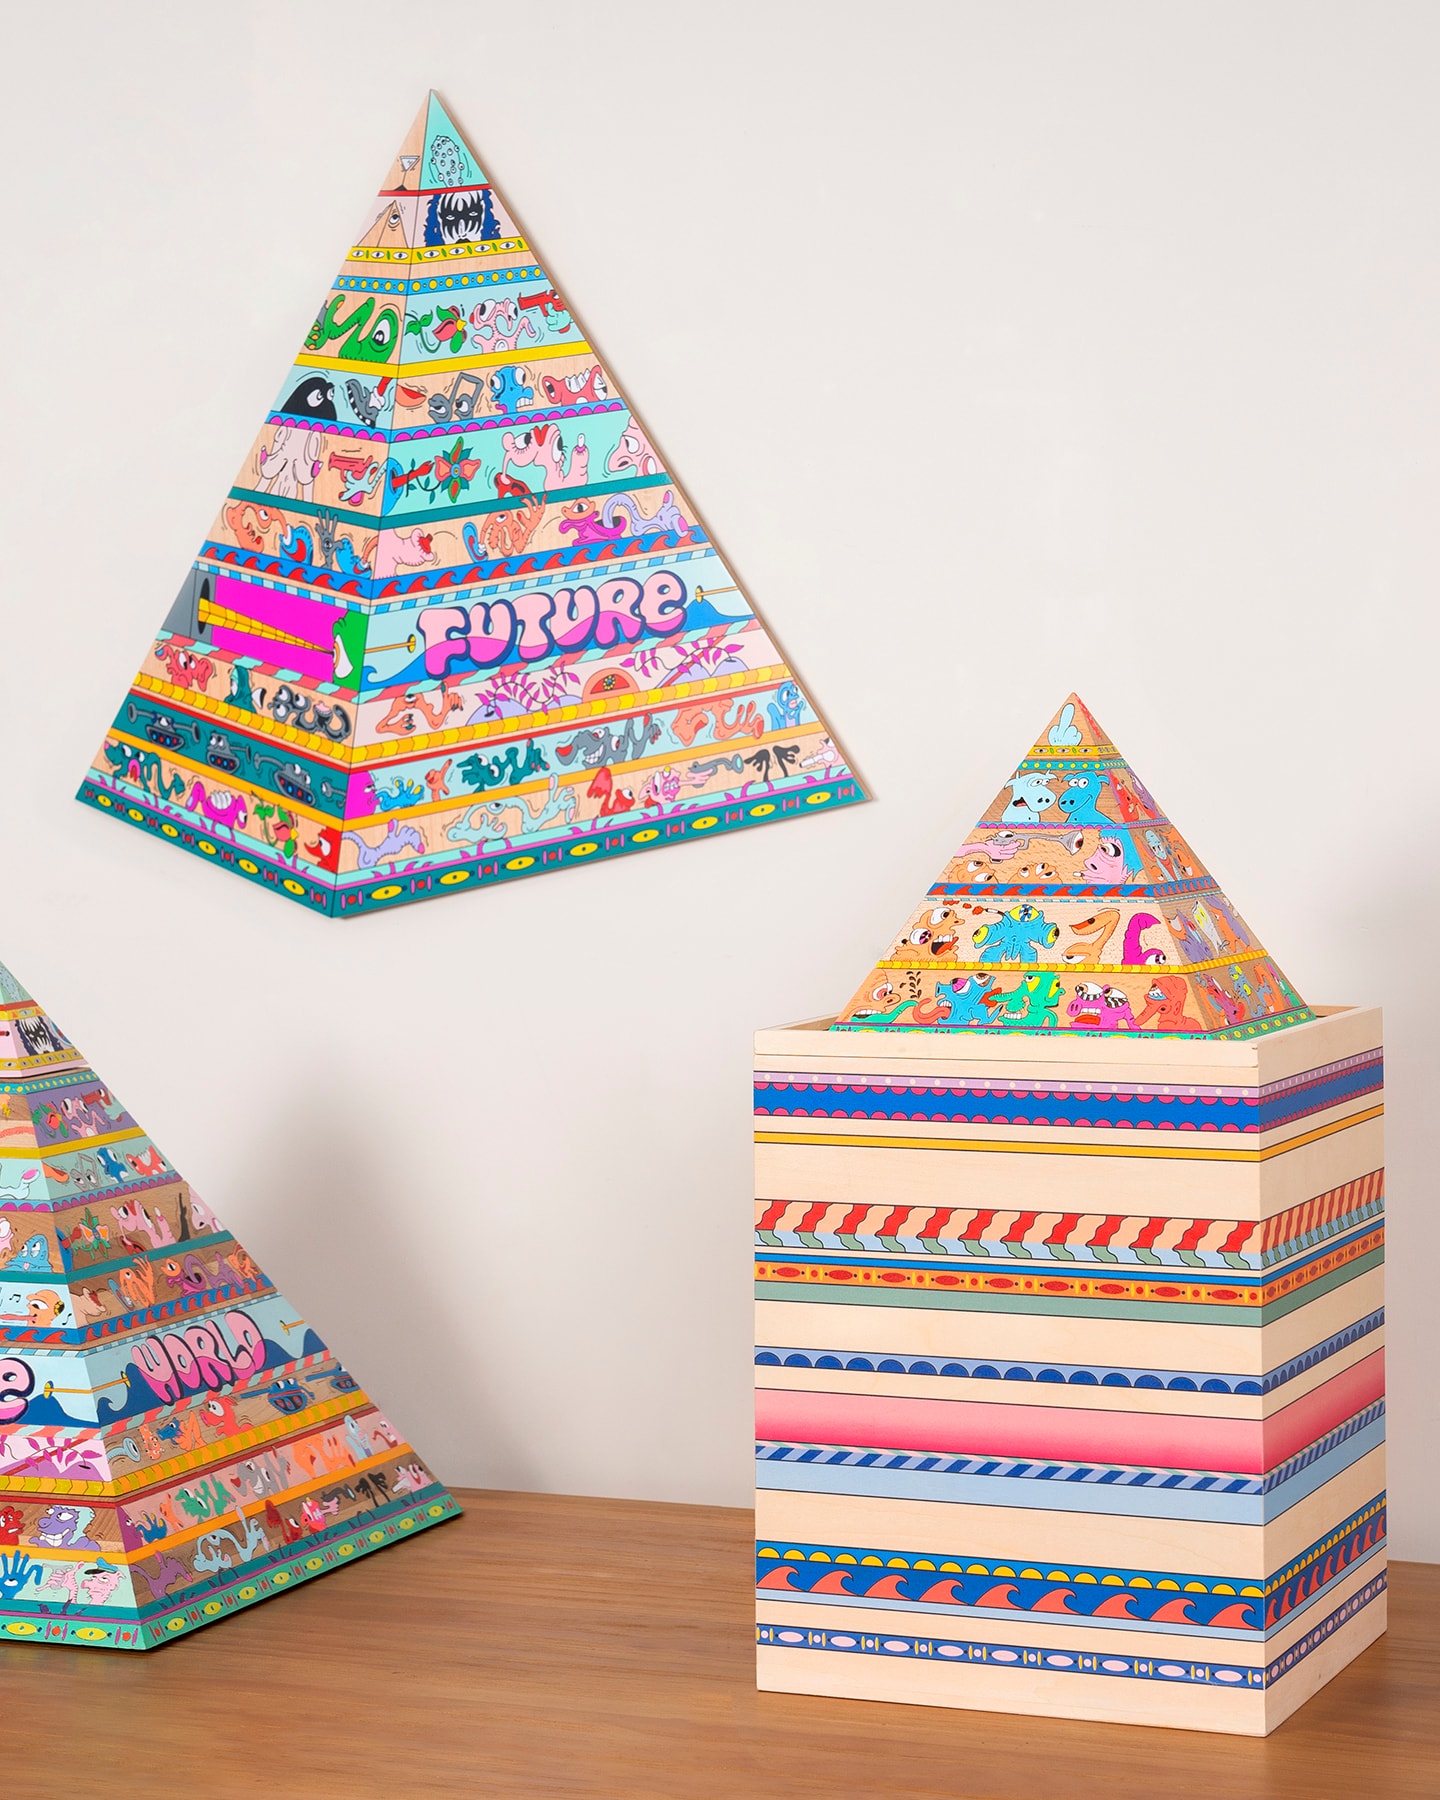 紐約藝術家 Erik Parker 再度攜手 AllRightsReserved 推出原木金字塔及版畫